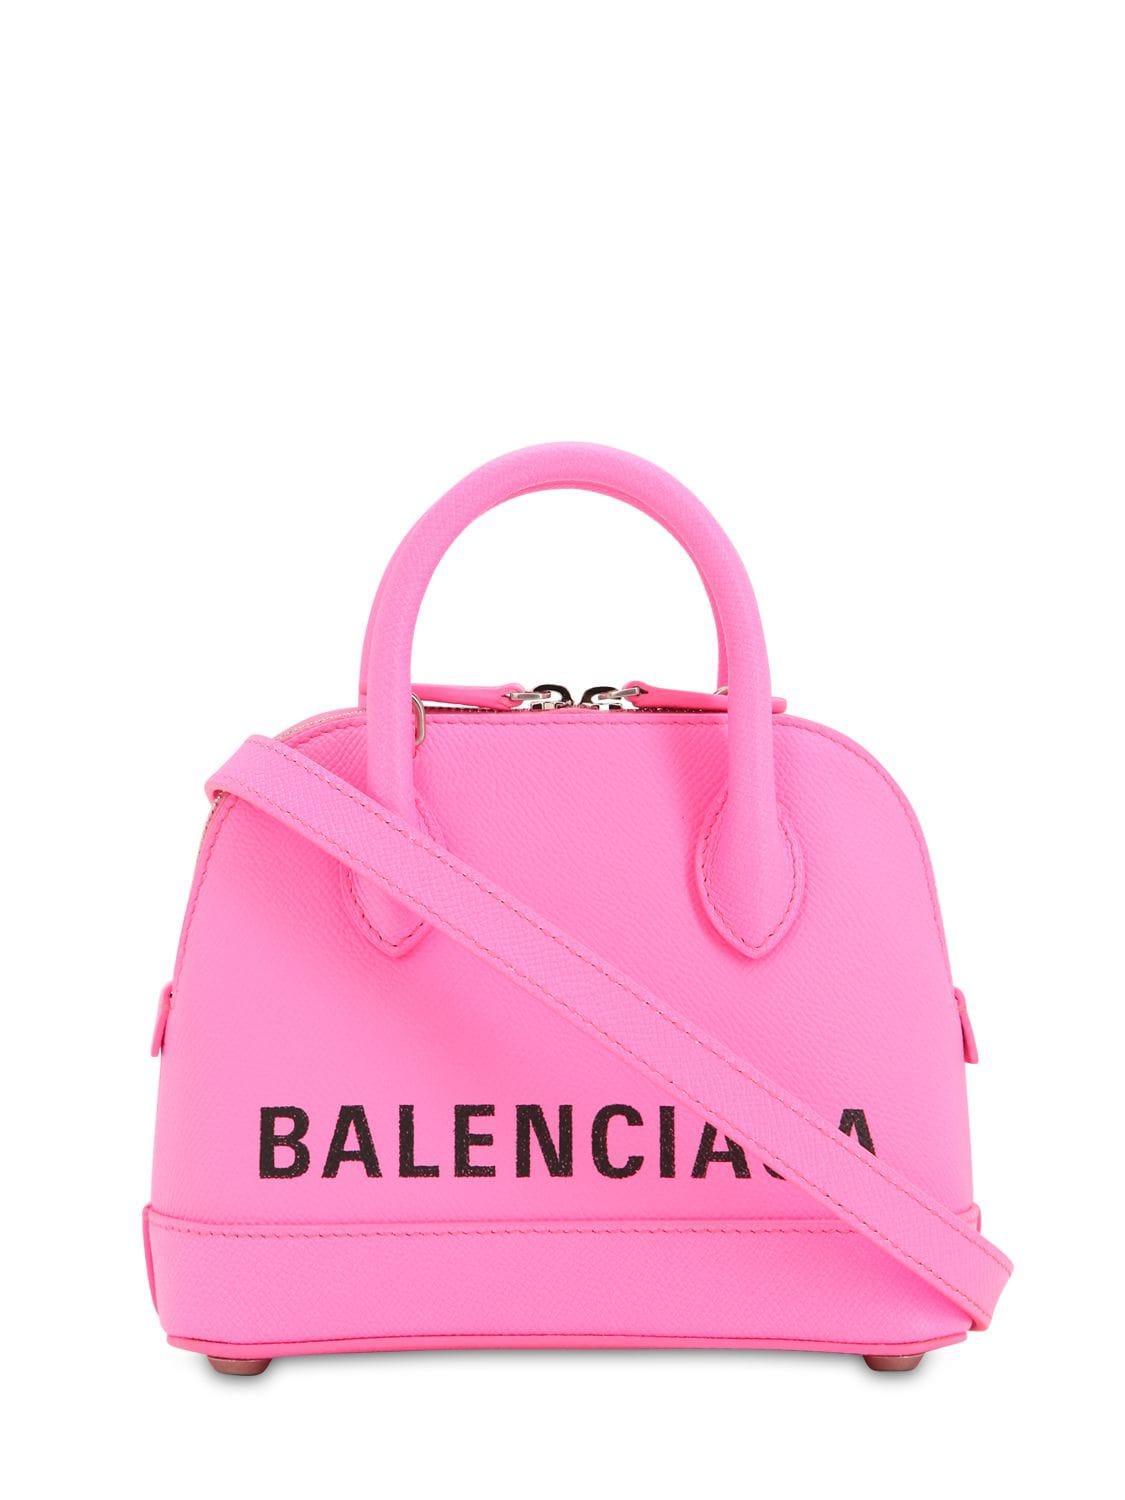 Balenciaga Ville Xxs Aj Top-handle Bag With Logo in Acid Pink 